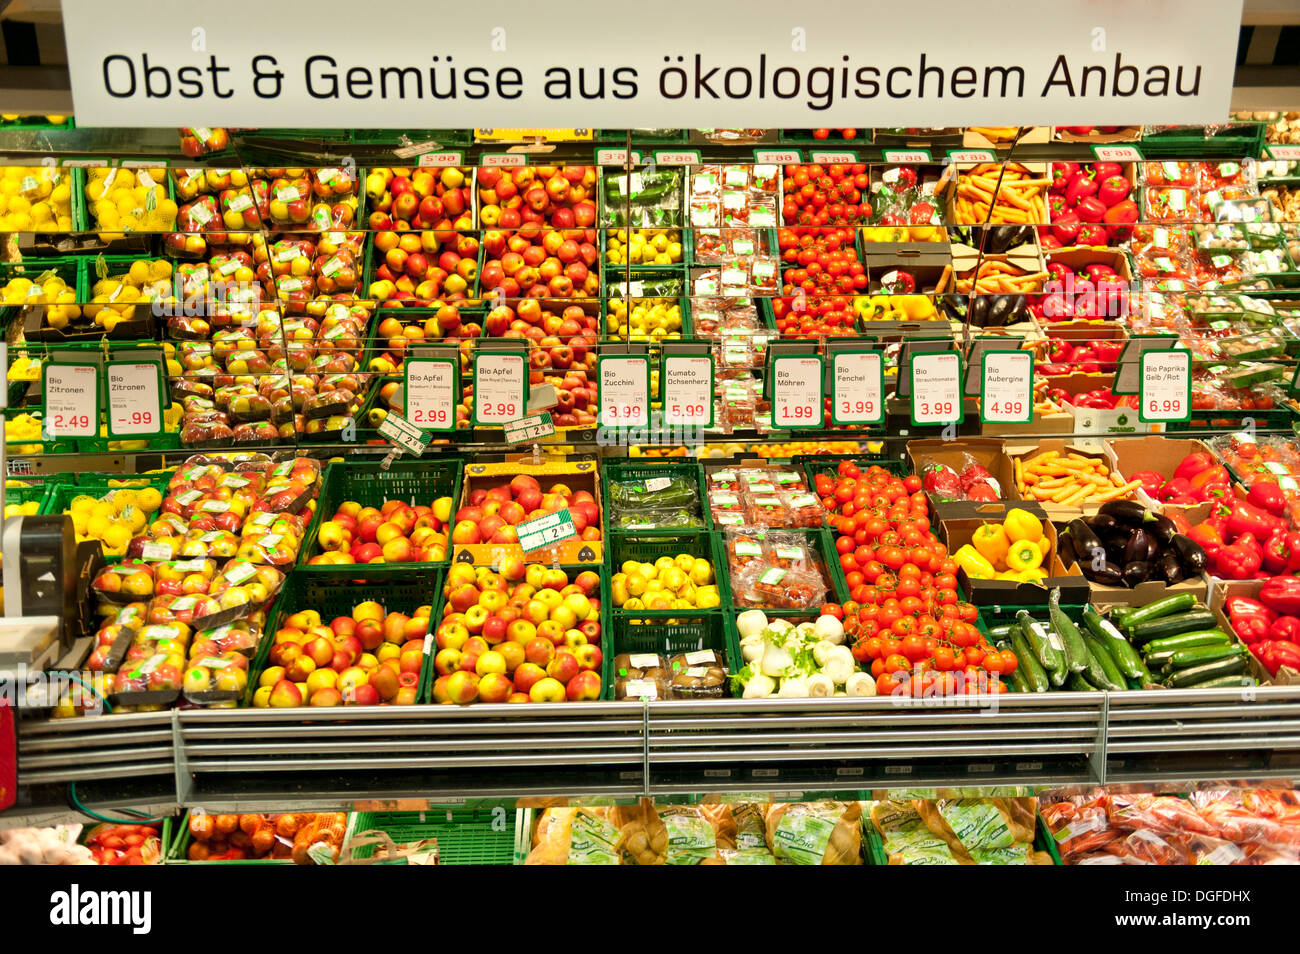 Sign in tedesco 'Obst und Gemüse aus ökologischem Anbau', fresco frutta e verdura, display in un supermercato Foto Stock